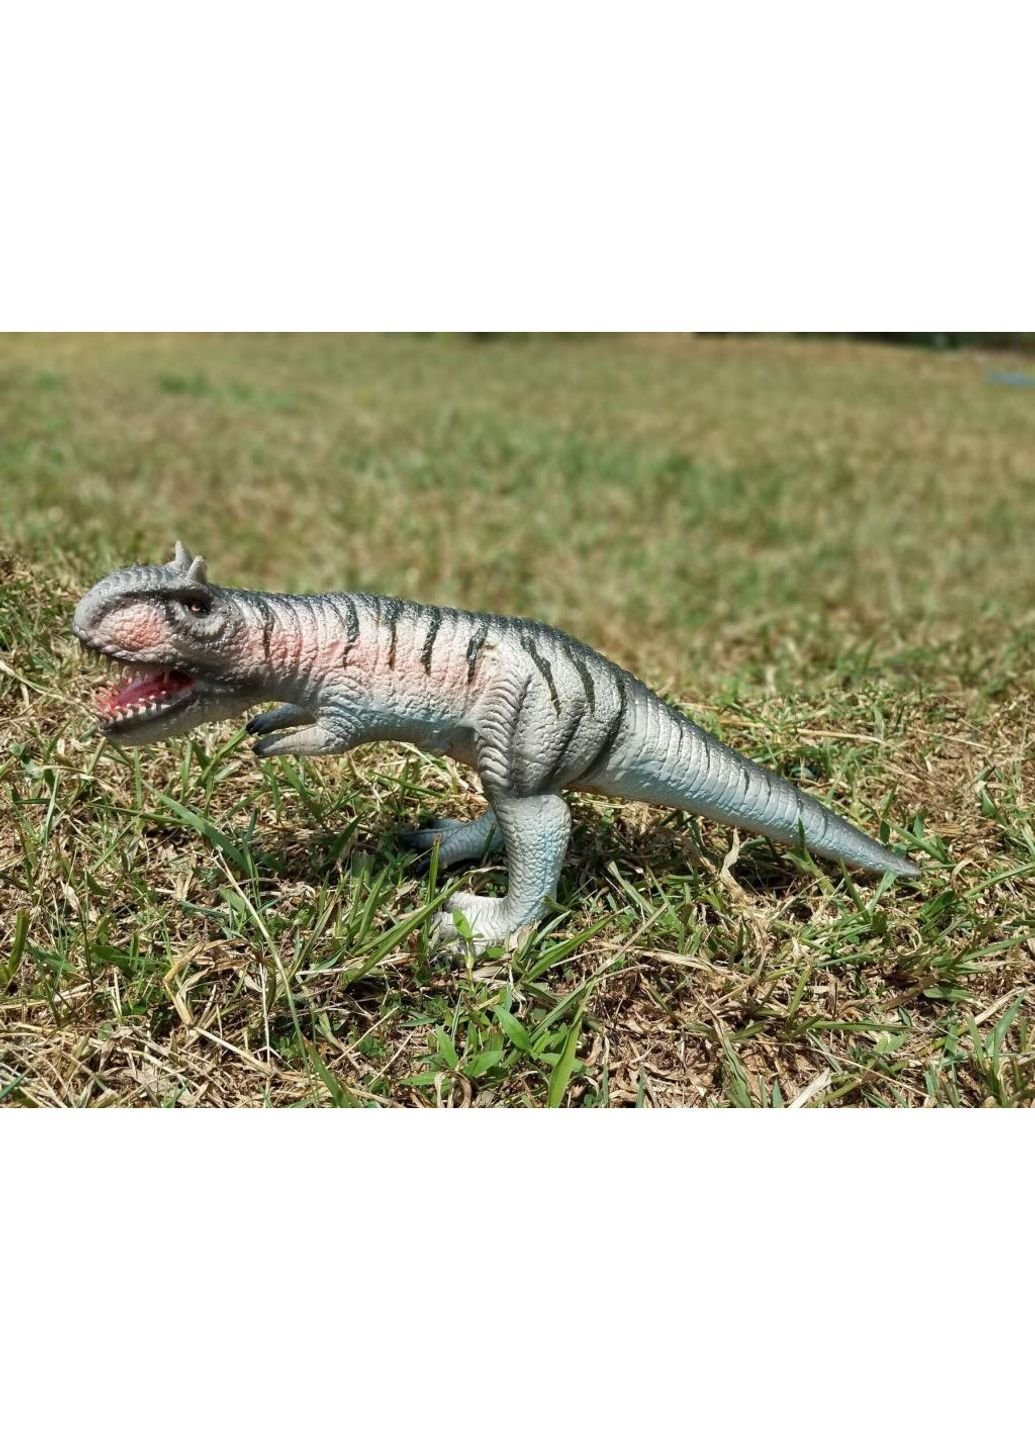 Фигурка динозавр Карнозавр 36 см (21235) Lanka Novelties (252241910)